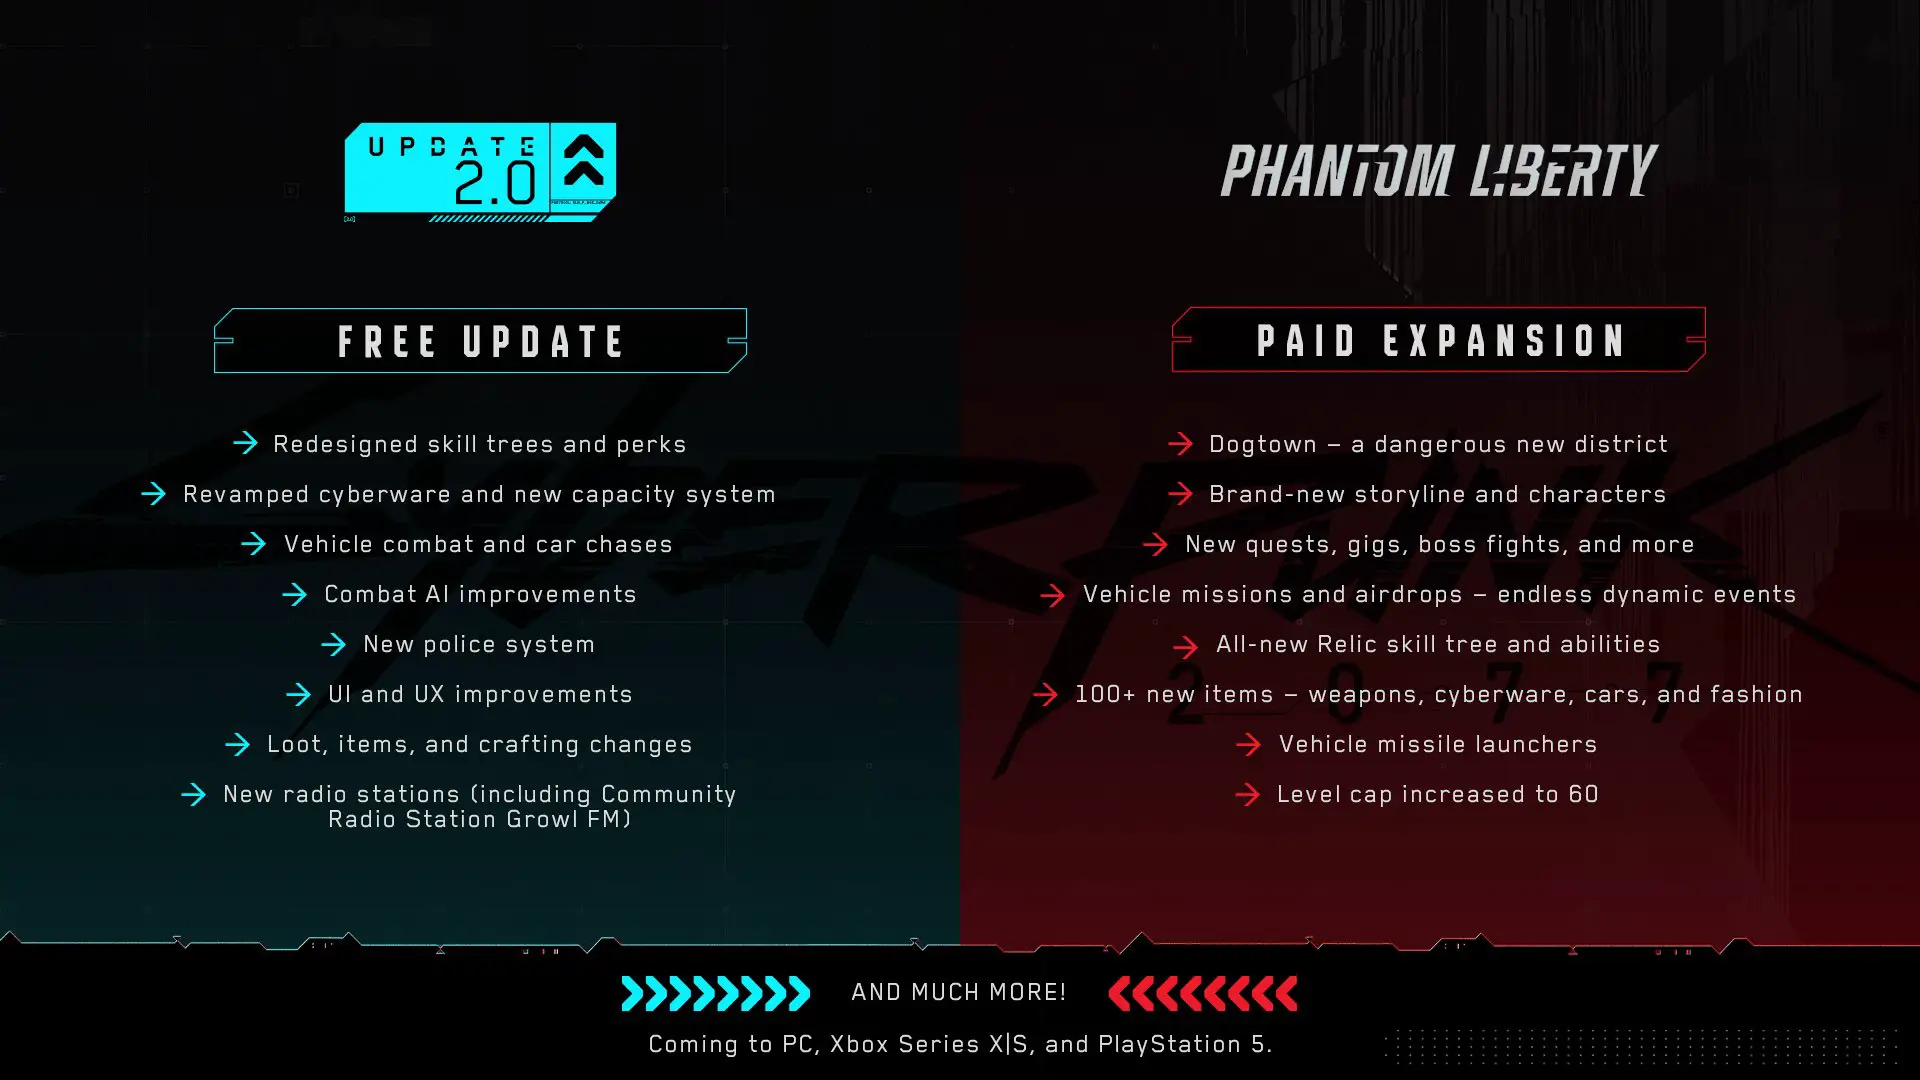 Cyberpunk-2077_update2.0_phantom-liberty_new features